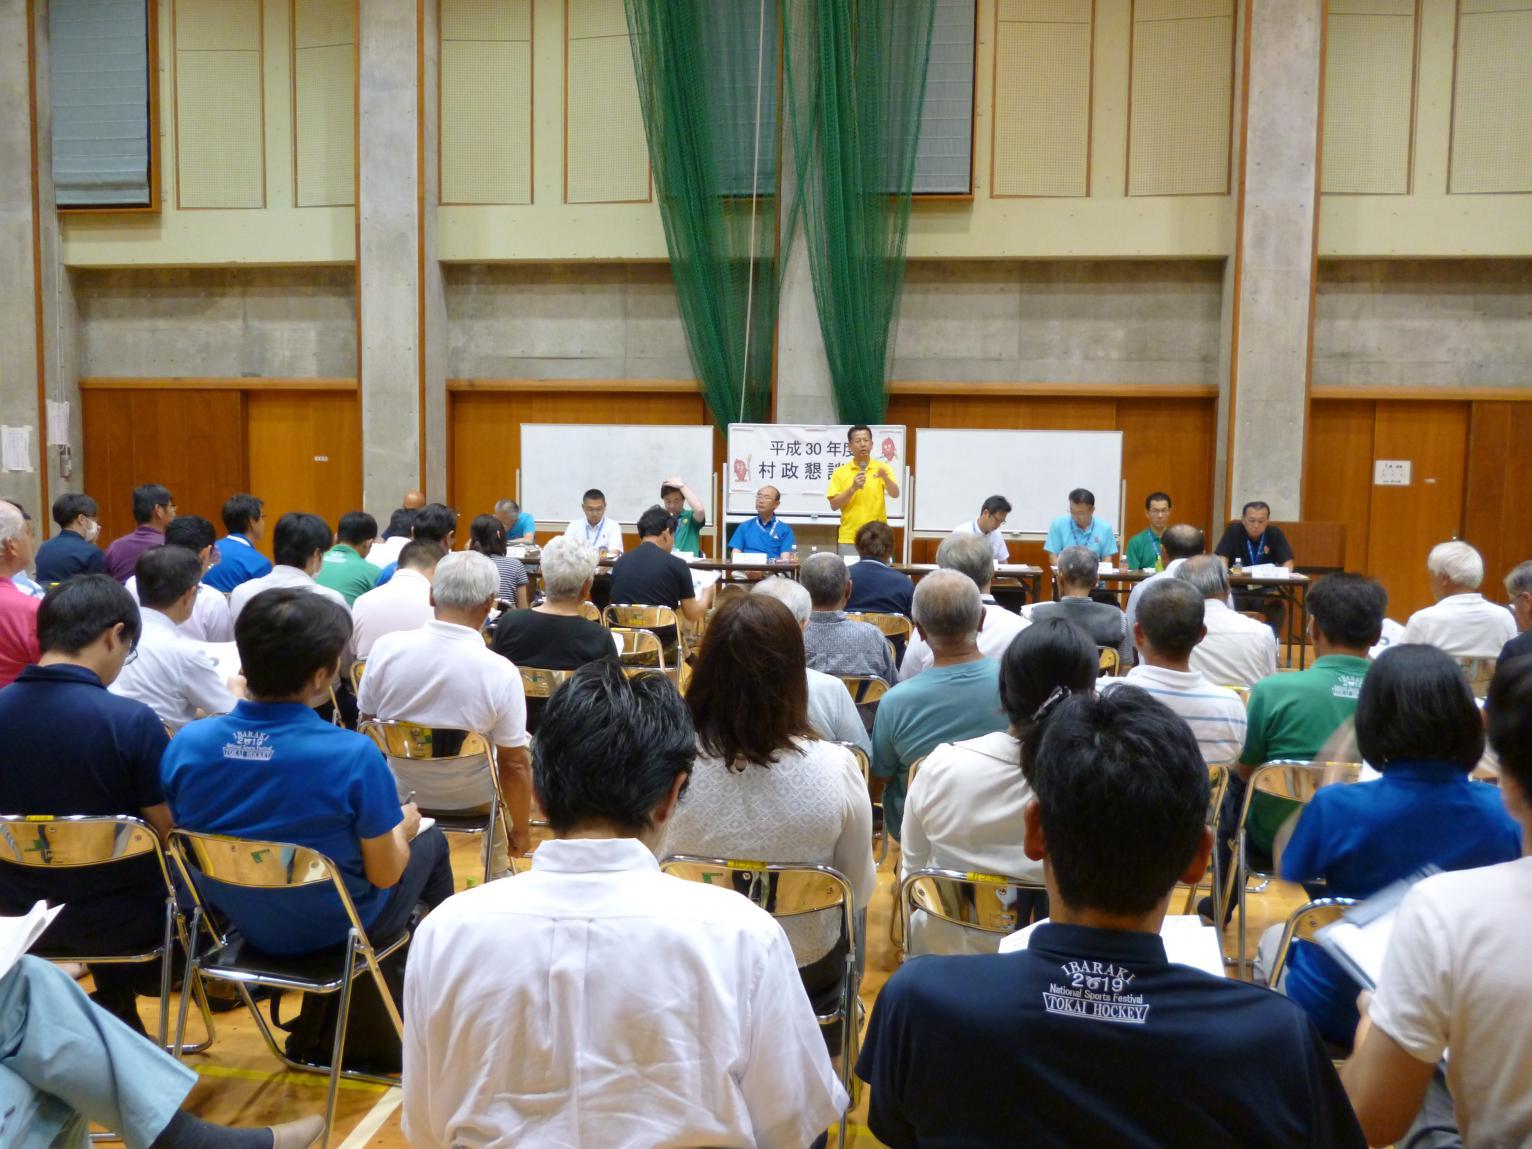 村松コミュニティセンターで行われた懇談会で、前方でマイクを持って話をしている男性と、着席し話を聞いている参加者たちの後方からの写真